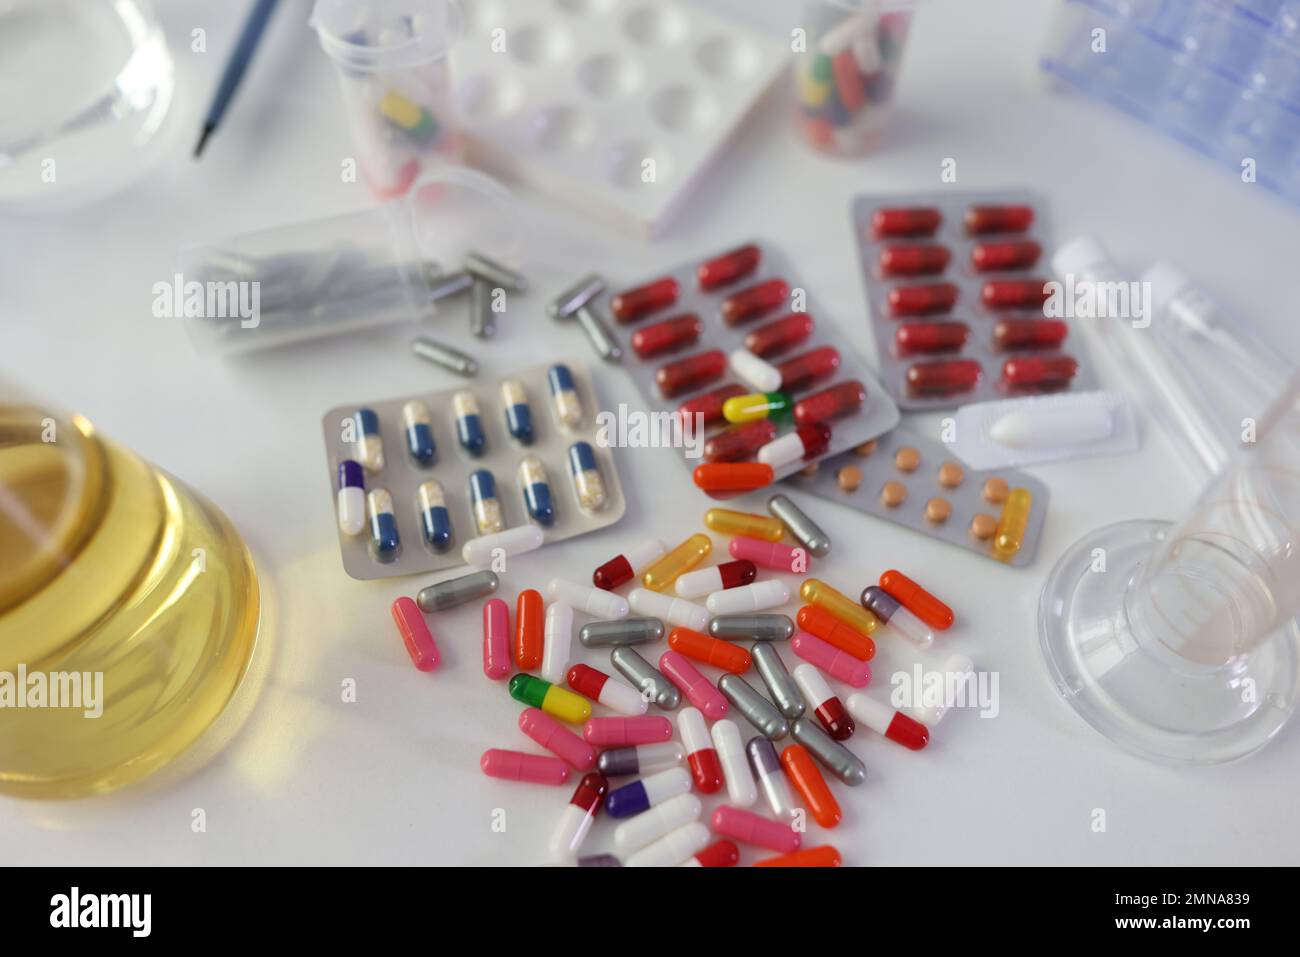 Beaucoup de pilules médicales et de médicaments différents avec des flacons sur la table de laboratoire, vue de dessus. Banque D'Images